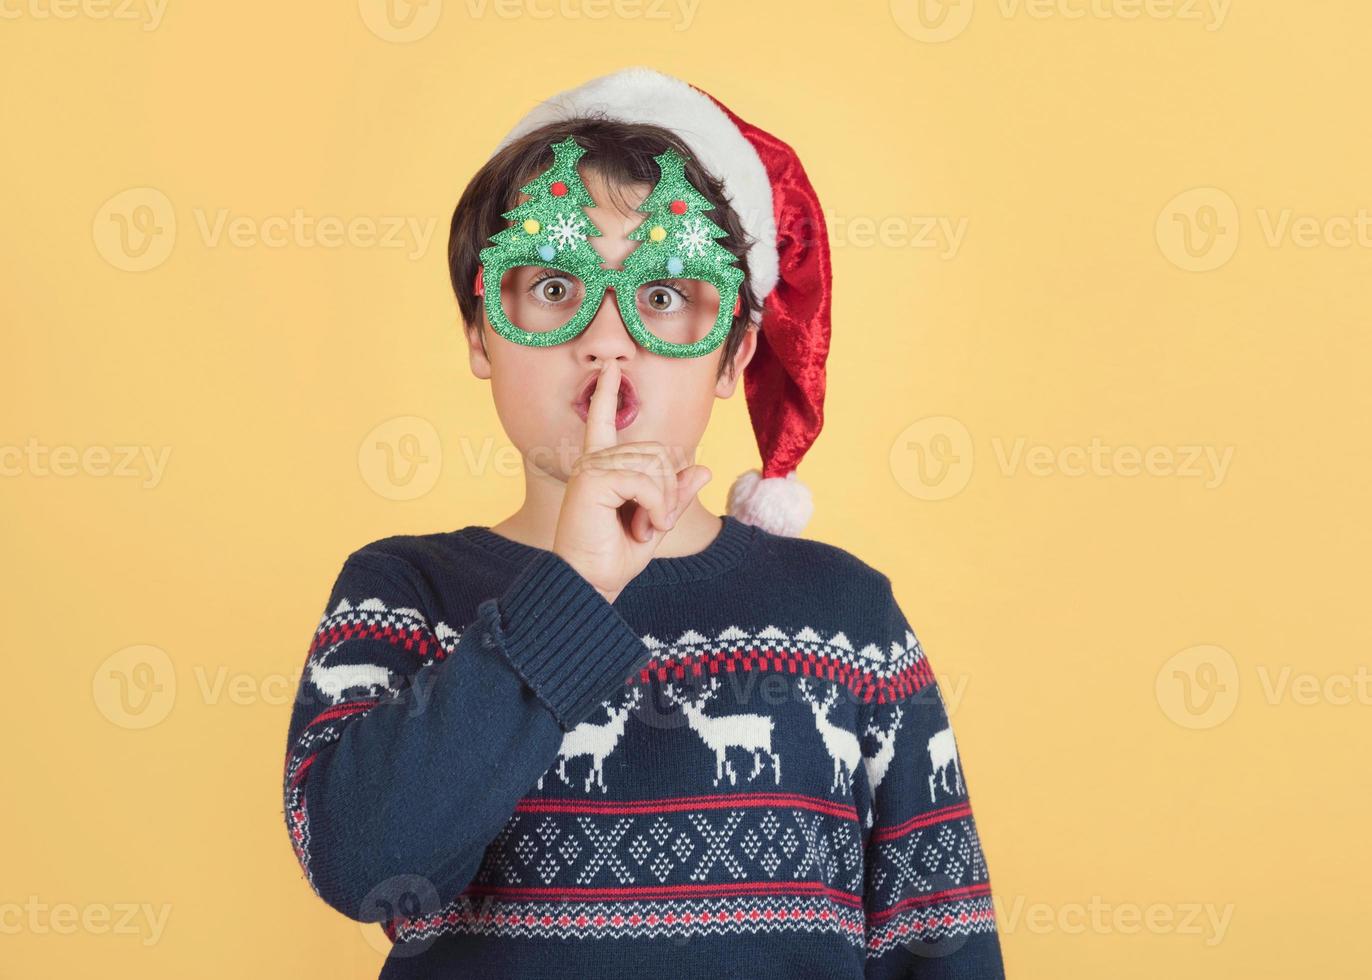 bambino che indossa il cappello di Babbo Natale che chiede silenzio foto